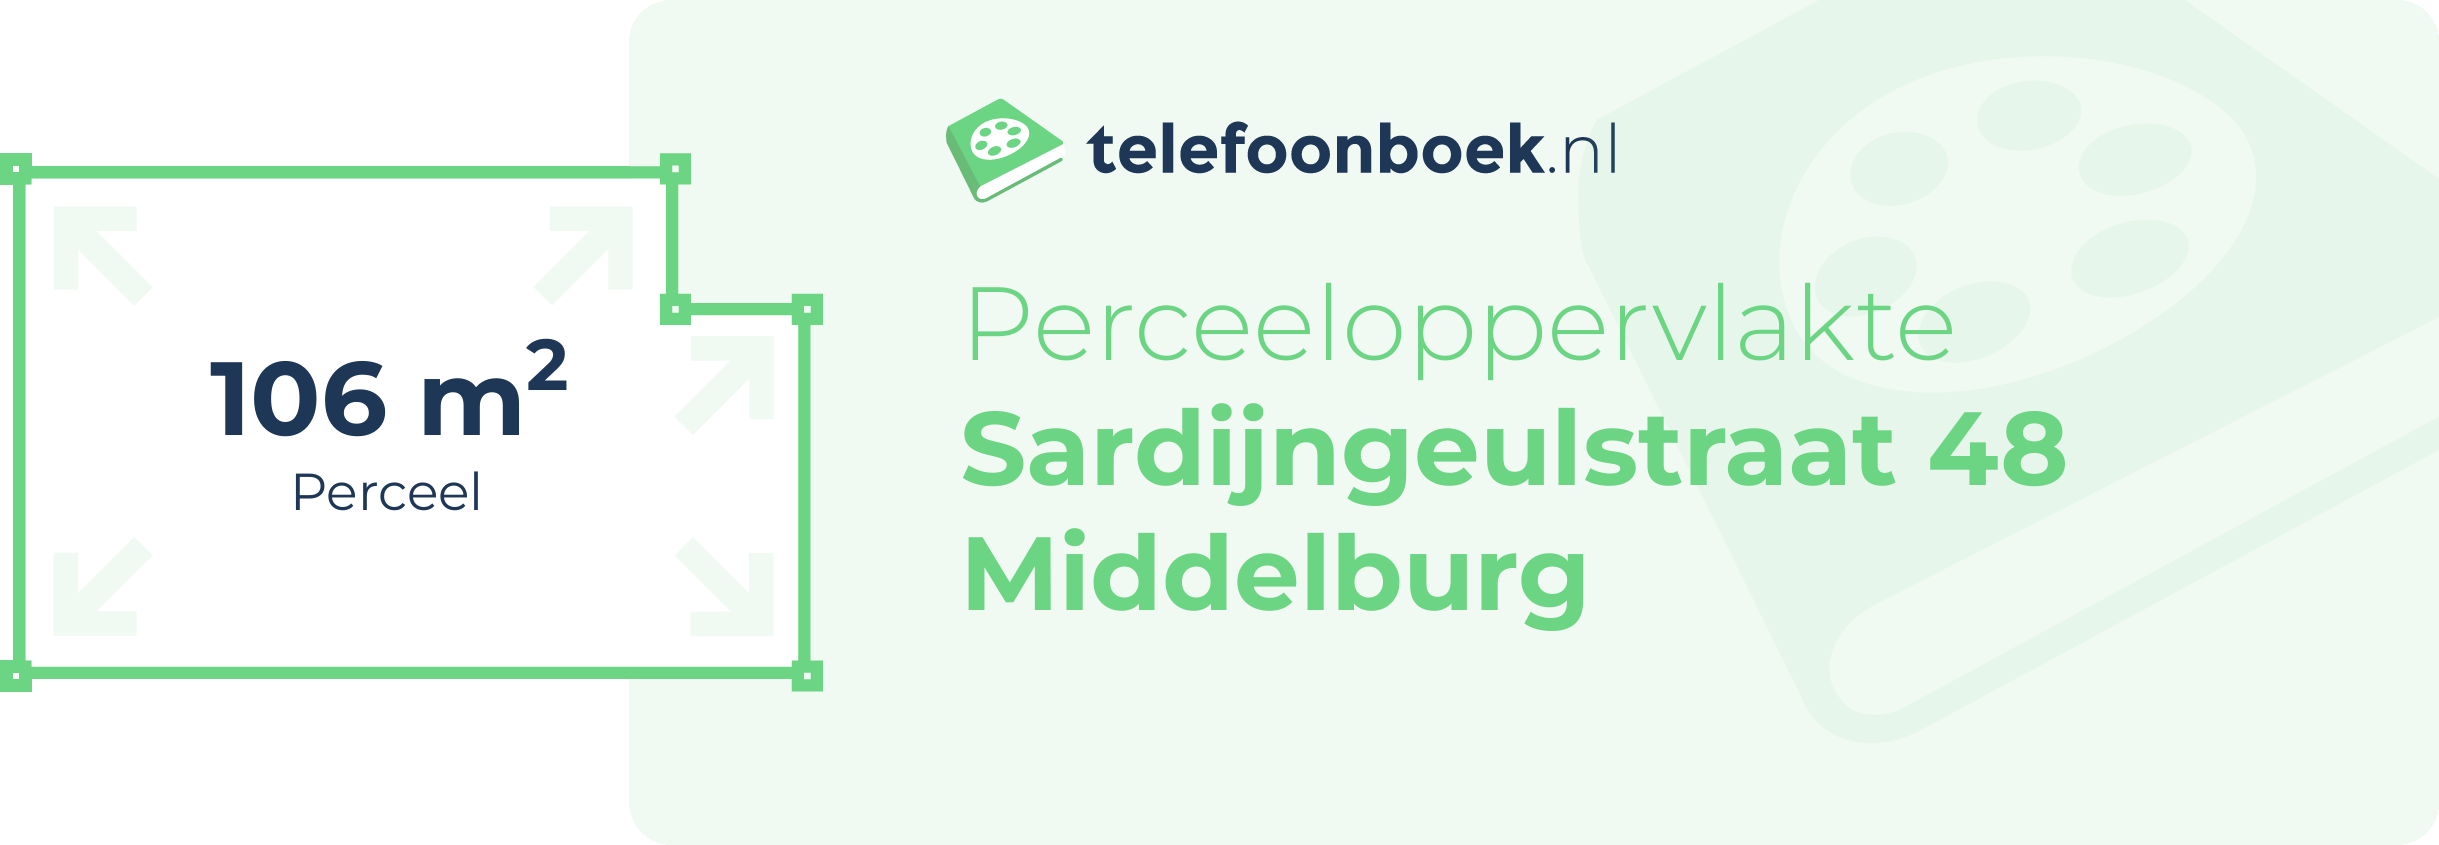 Perceeloppervlakte Sardijngeulstraat 48 Middelburg